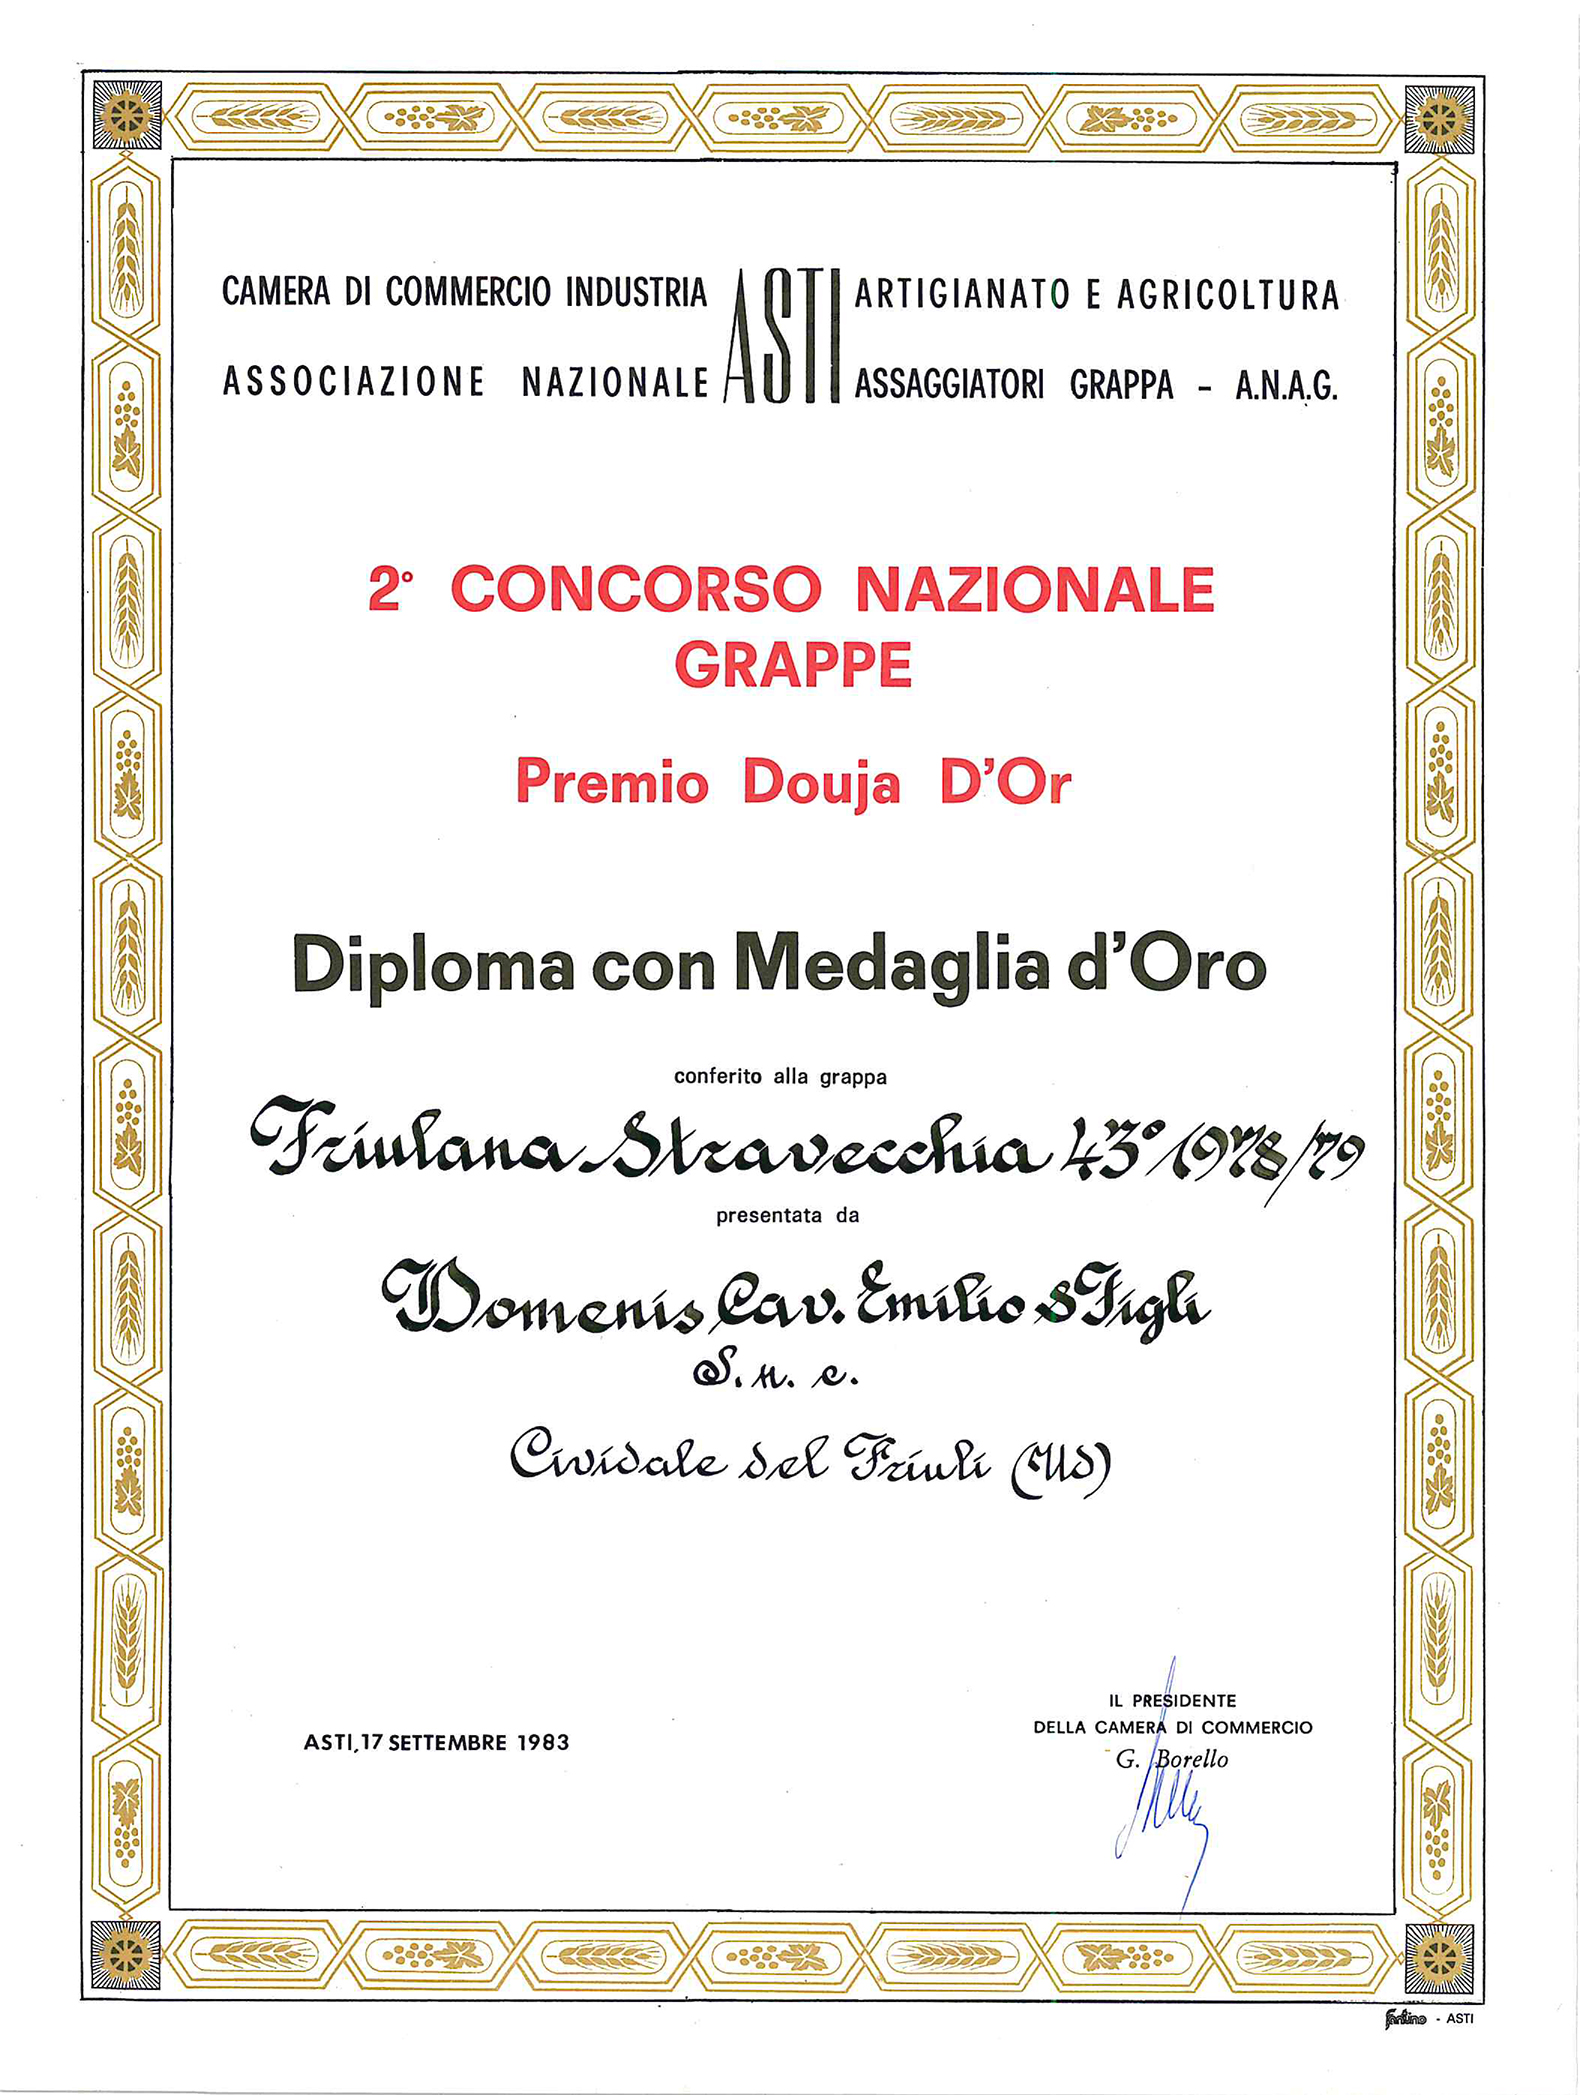 Premio Douja d’Or 1983 – Grappa Friulana Stravecchia 43° 1978-79